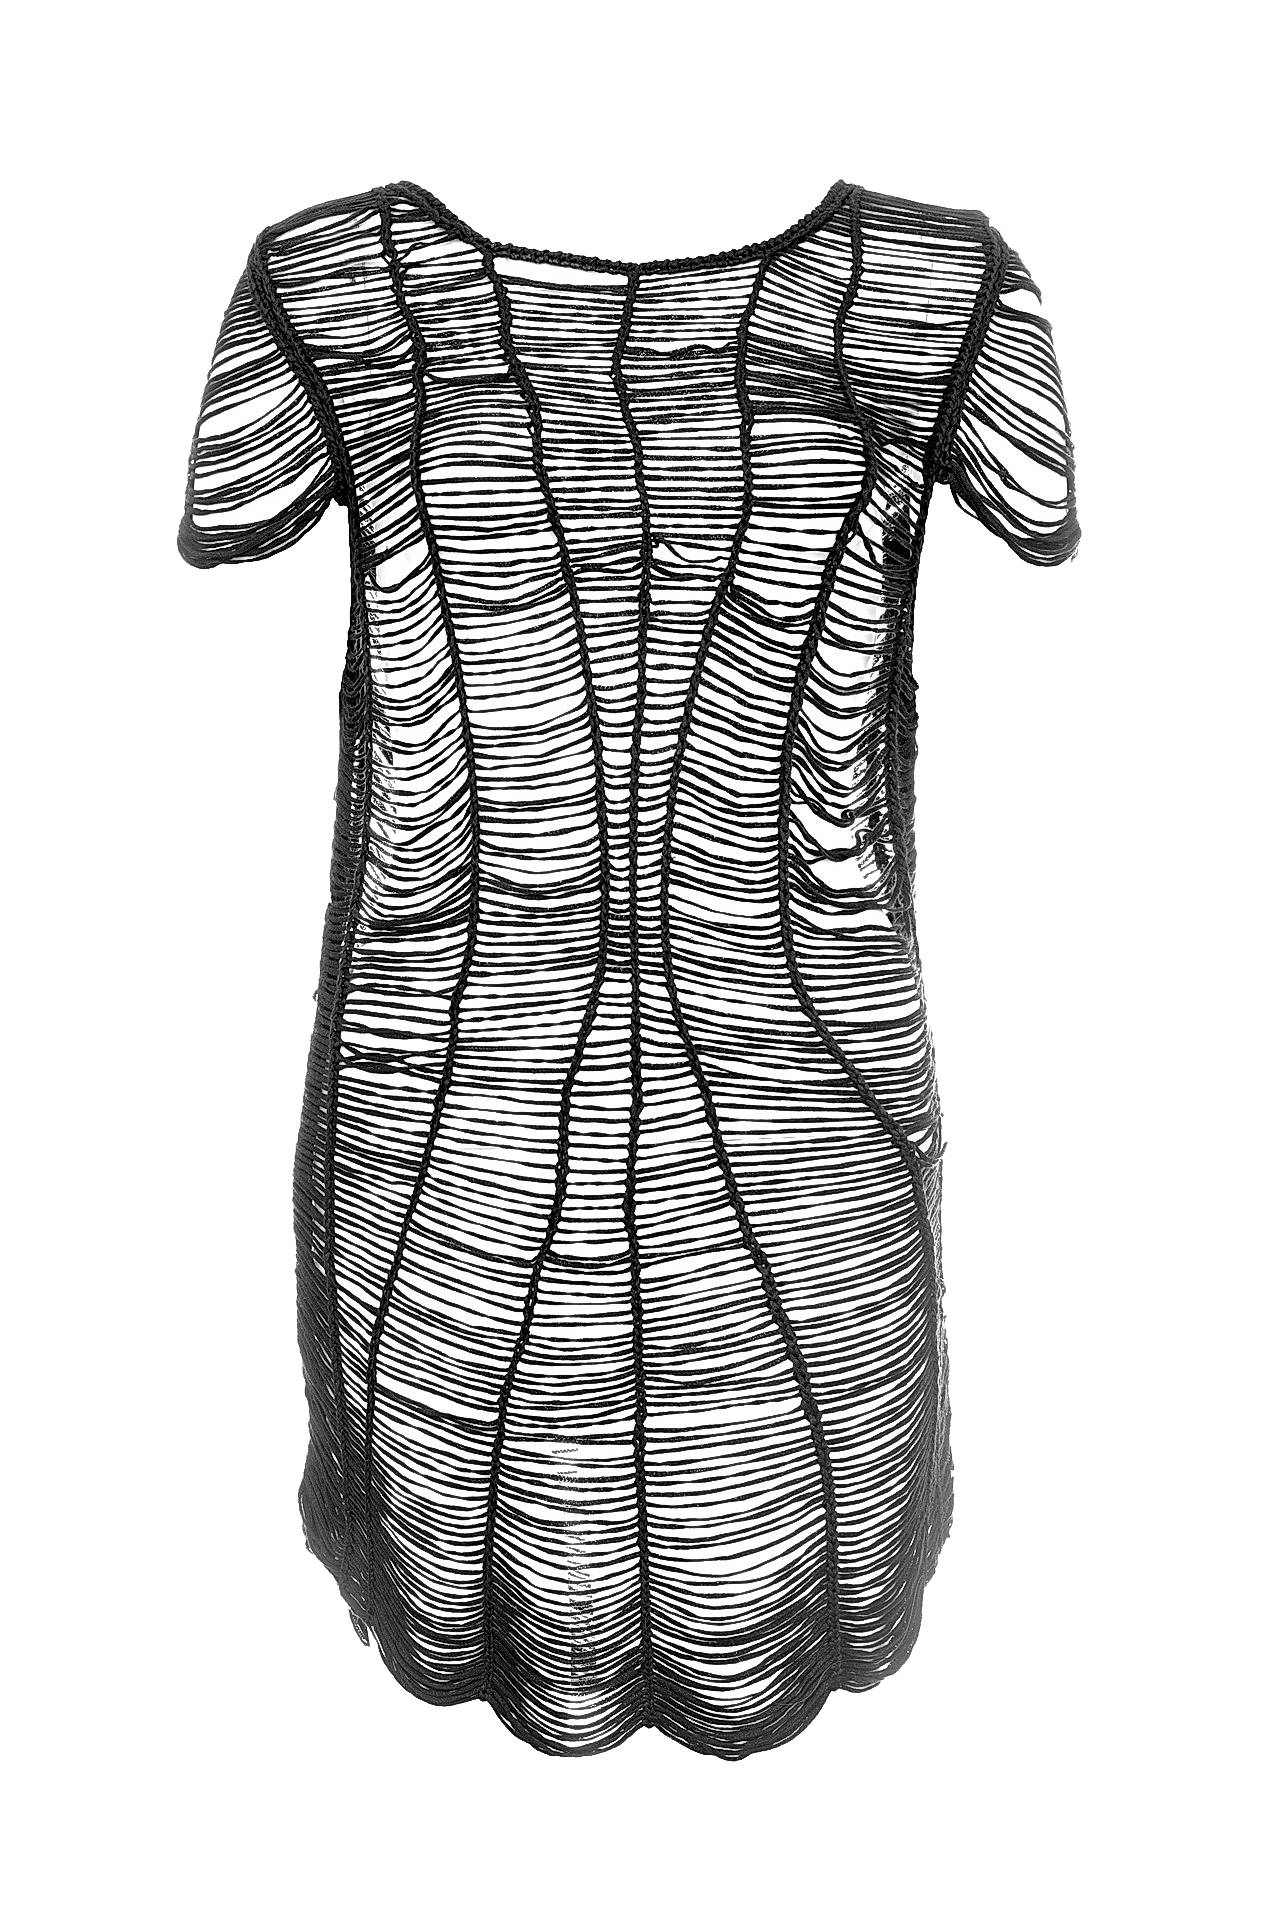 Одежда женская Туника SWEEWE (2089/11.1). Купить за 4250 руб.